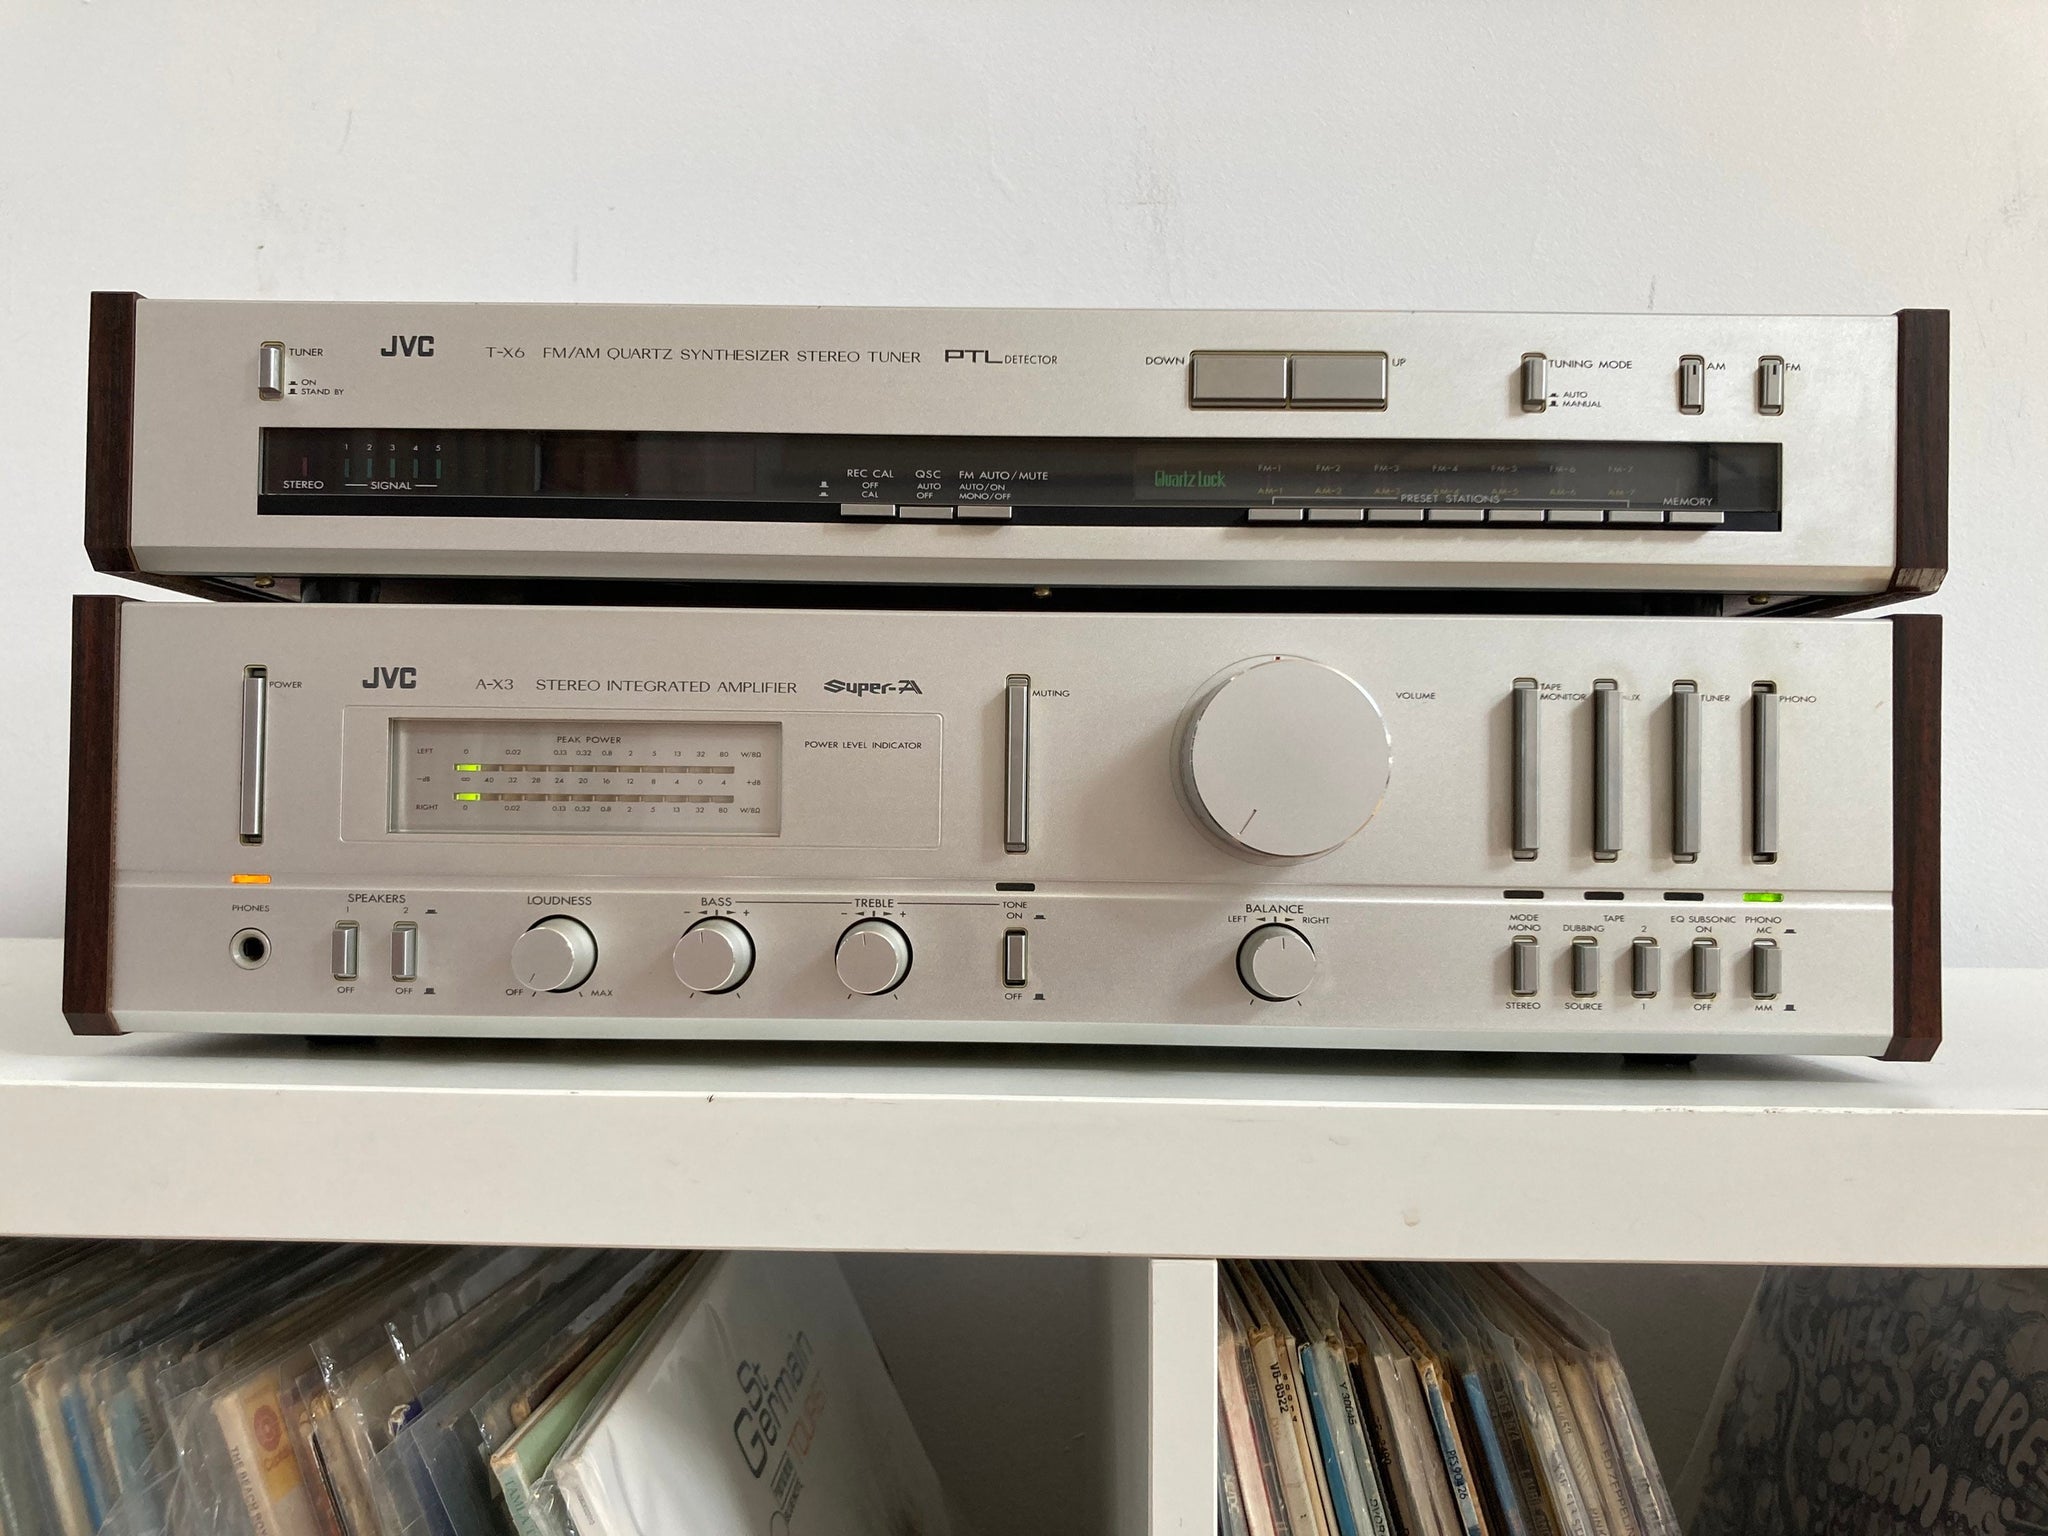 leven koud Politiek Rare JVC set (1979) | A-X3 amplifier and TX-6 tuner. A hidden gem, ahe –  Silverface Audio